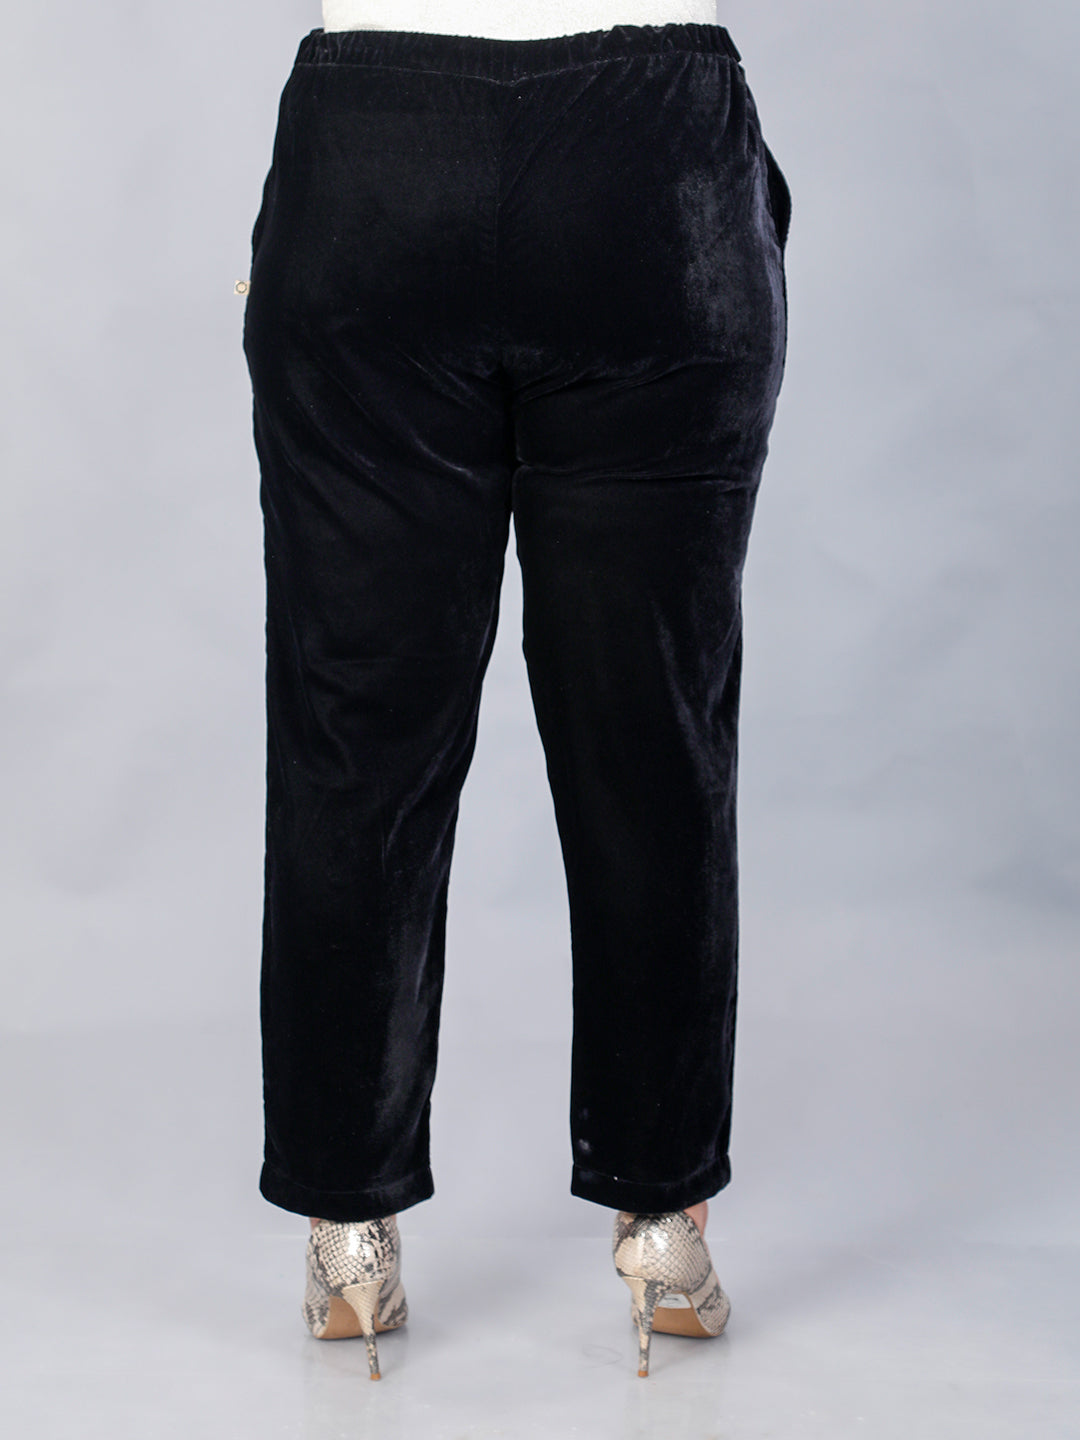 Black velvet straight pants – Fabnest